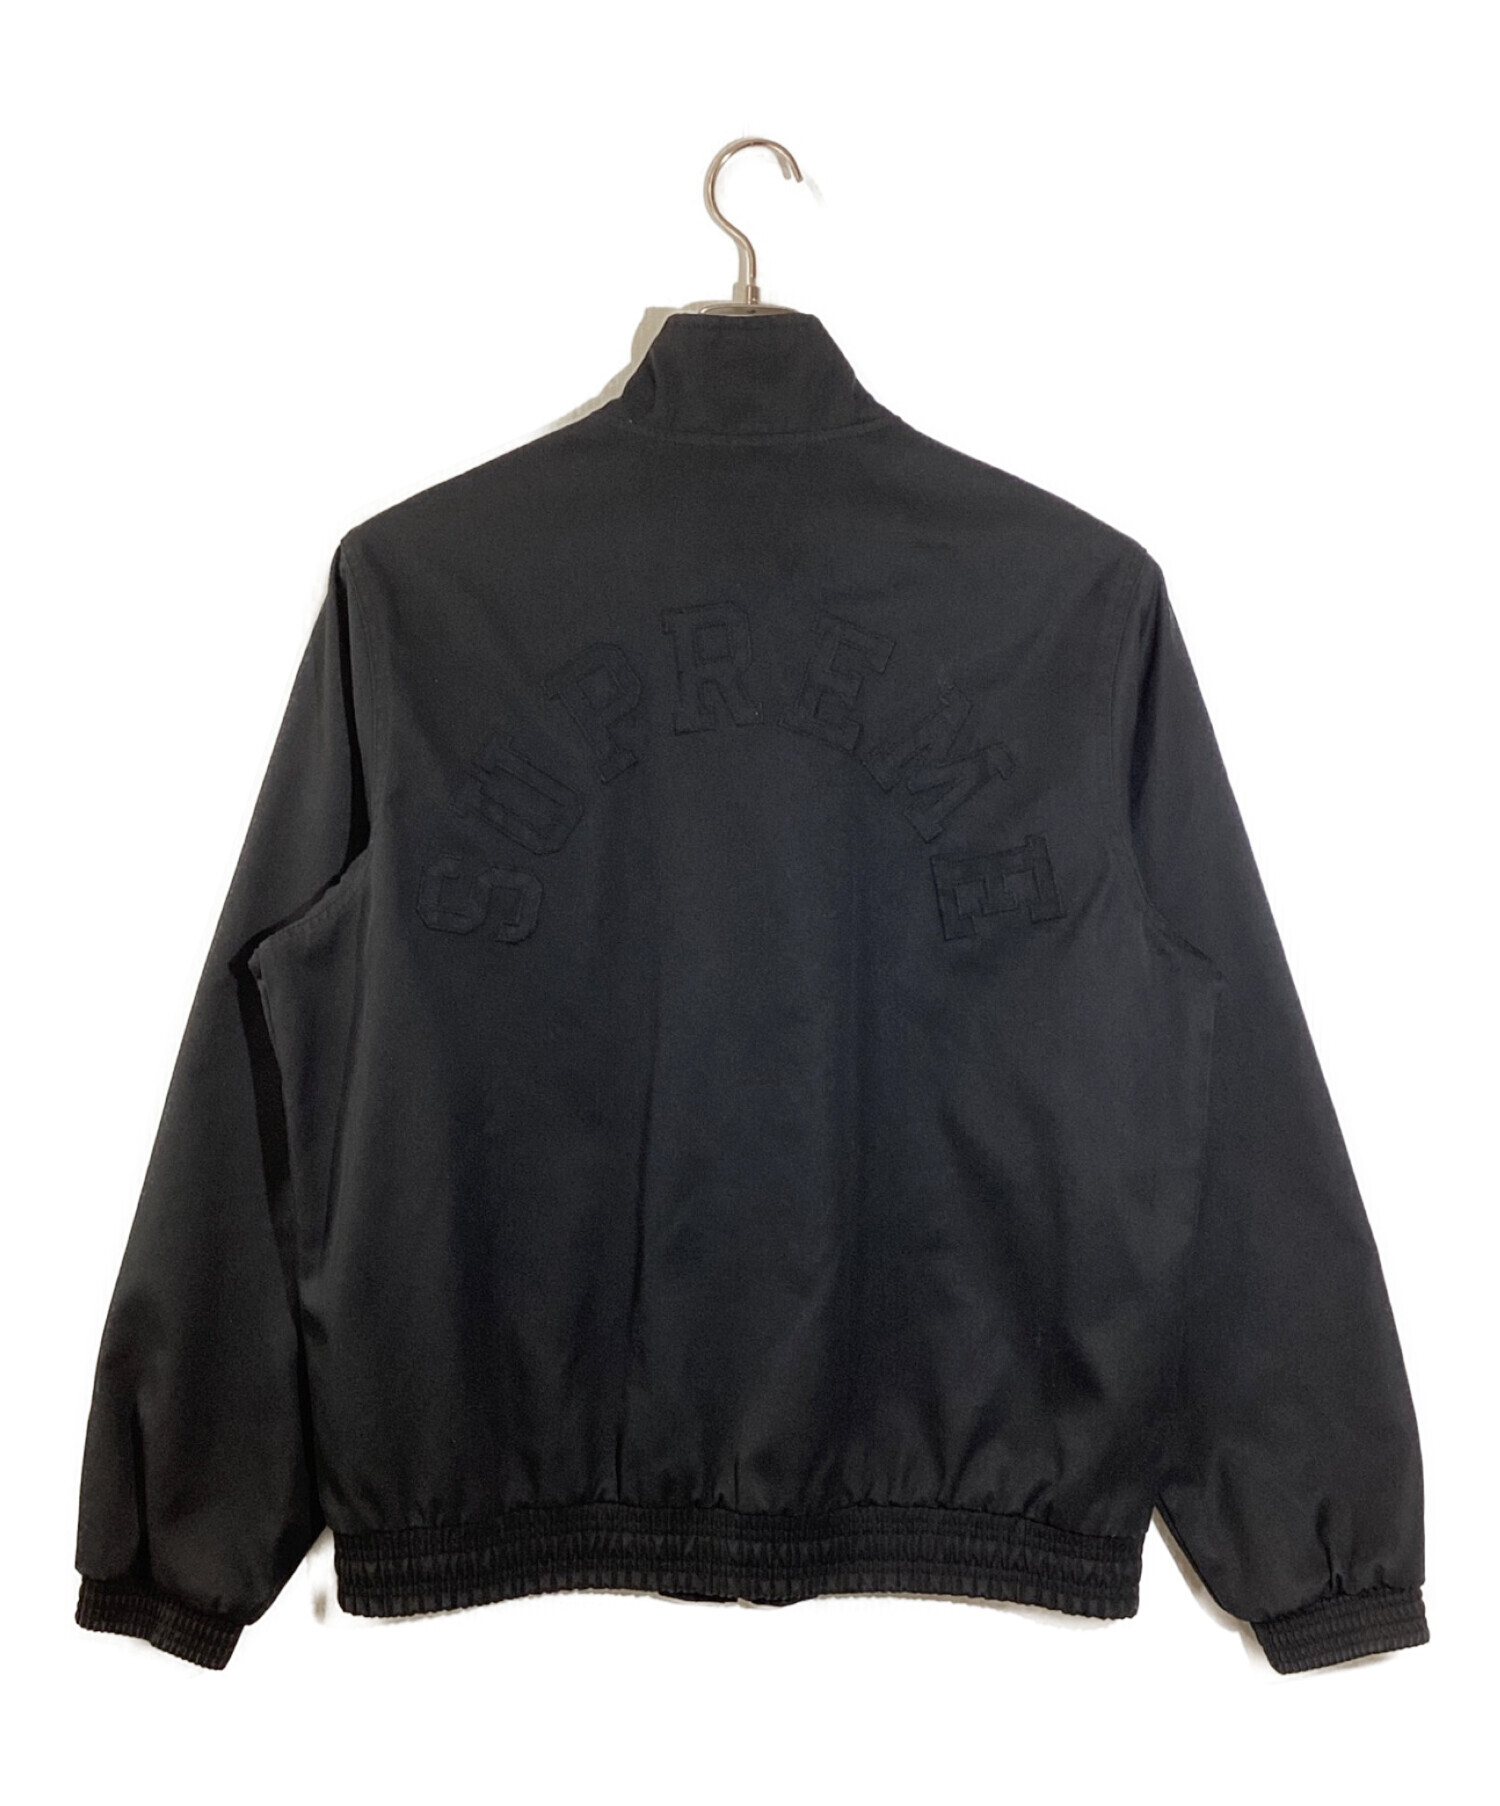 Aquascutum (アクアスキュータム) SUPREME (シュプリーム) club jacket　クラブジャケット ブラック サイズ:M